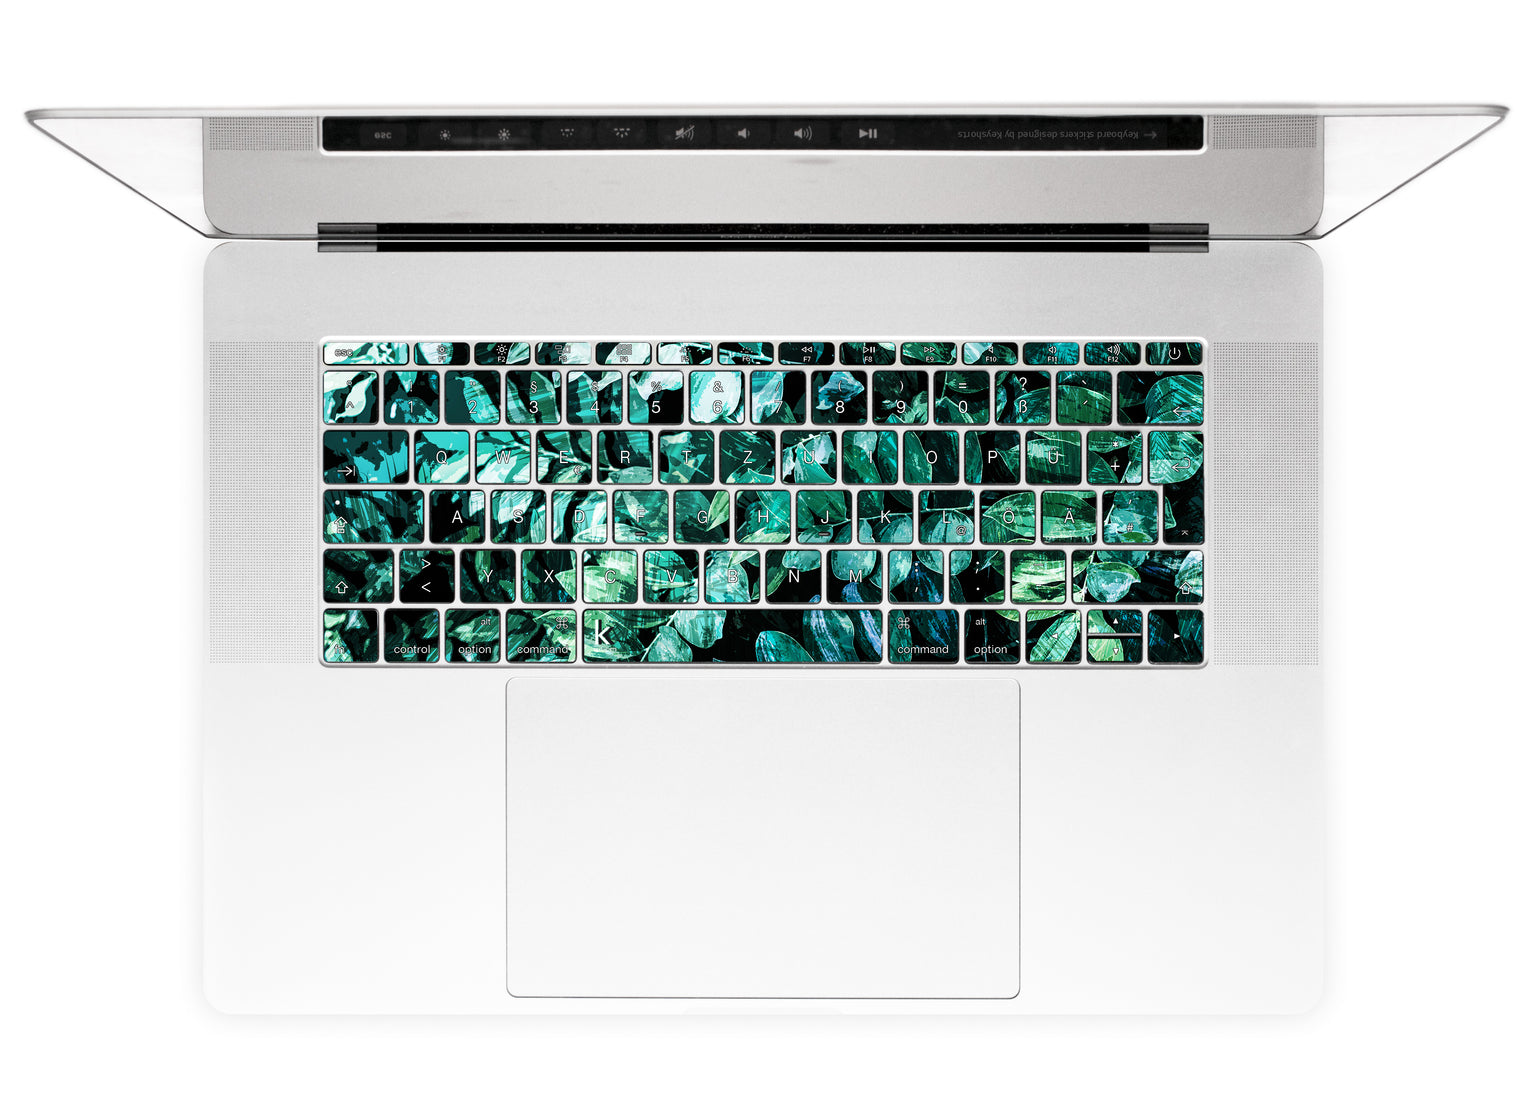 Mineral Leaves MacBook Keyboard Stickers alternate German